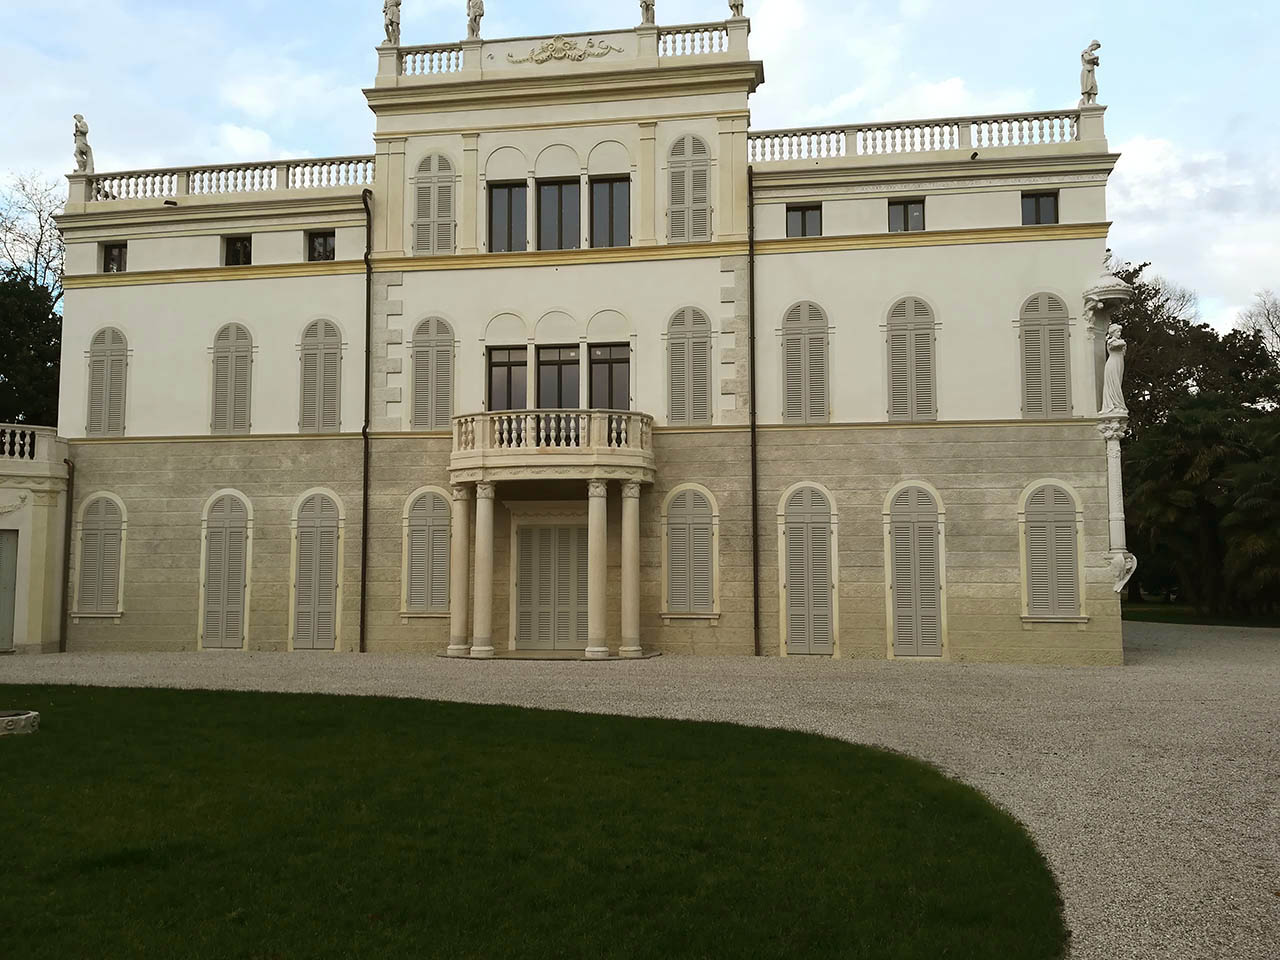 pavimentazione giardino Villa Gritti venezia